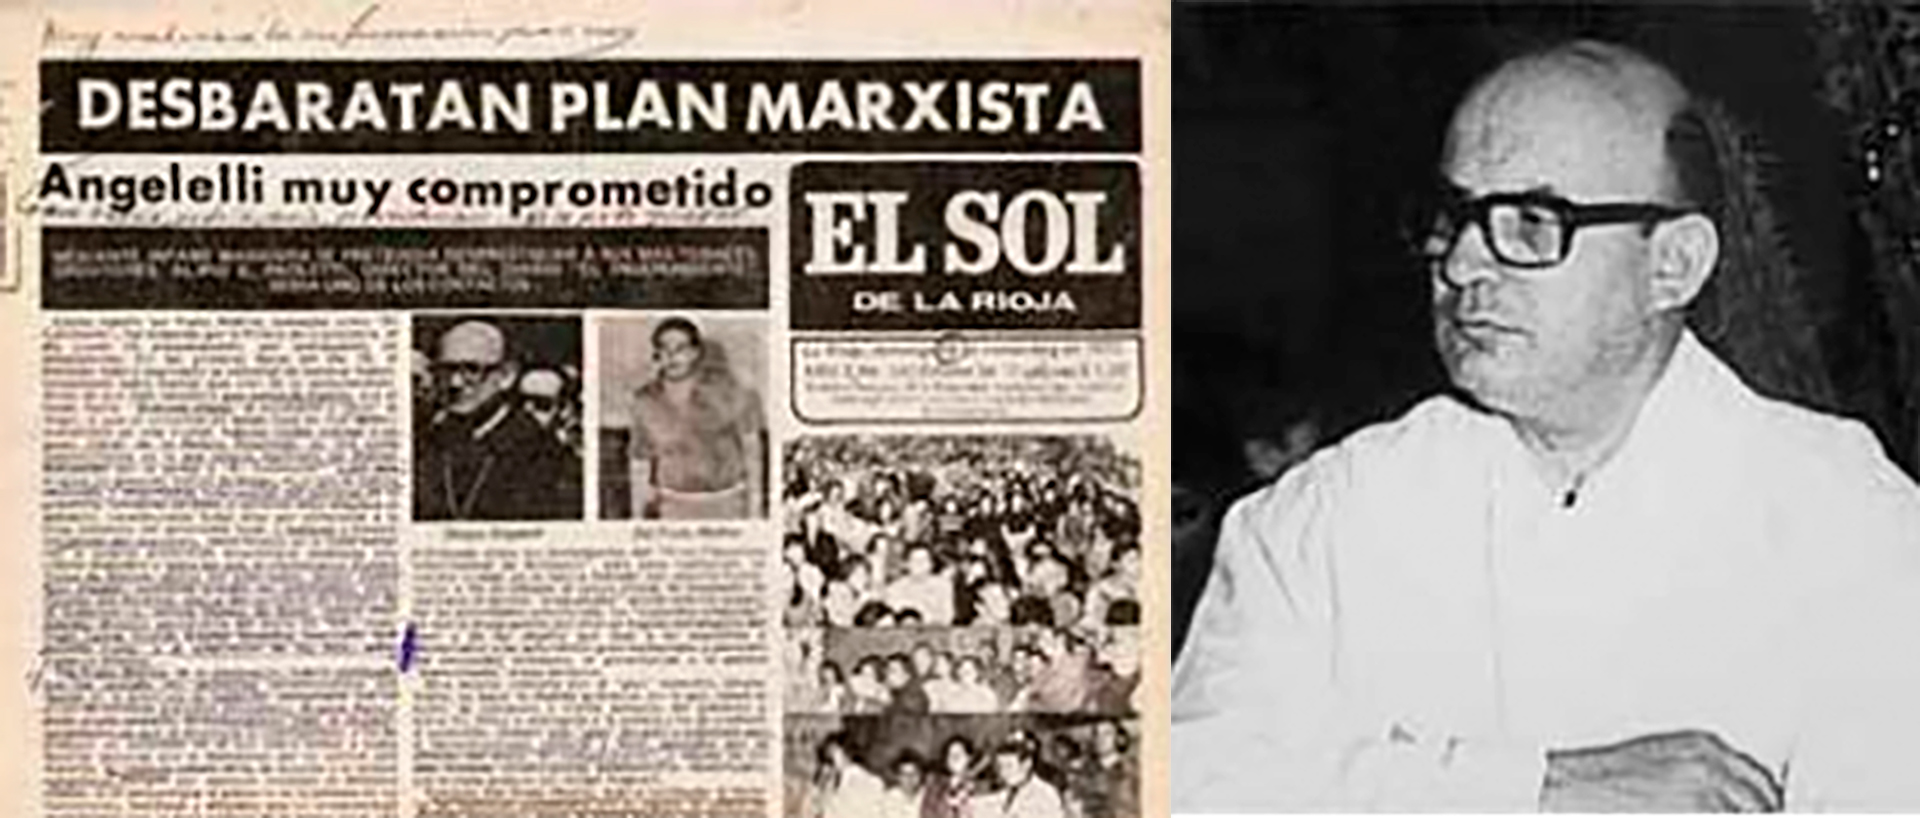 El "plan marxista" publicado en El Sol